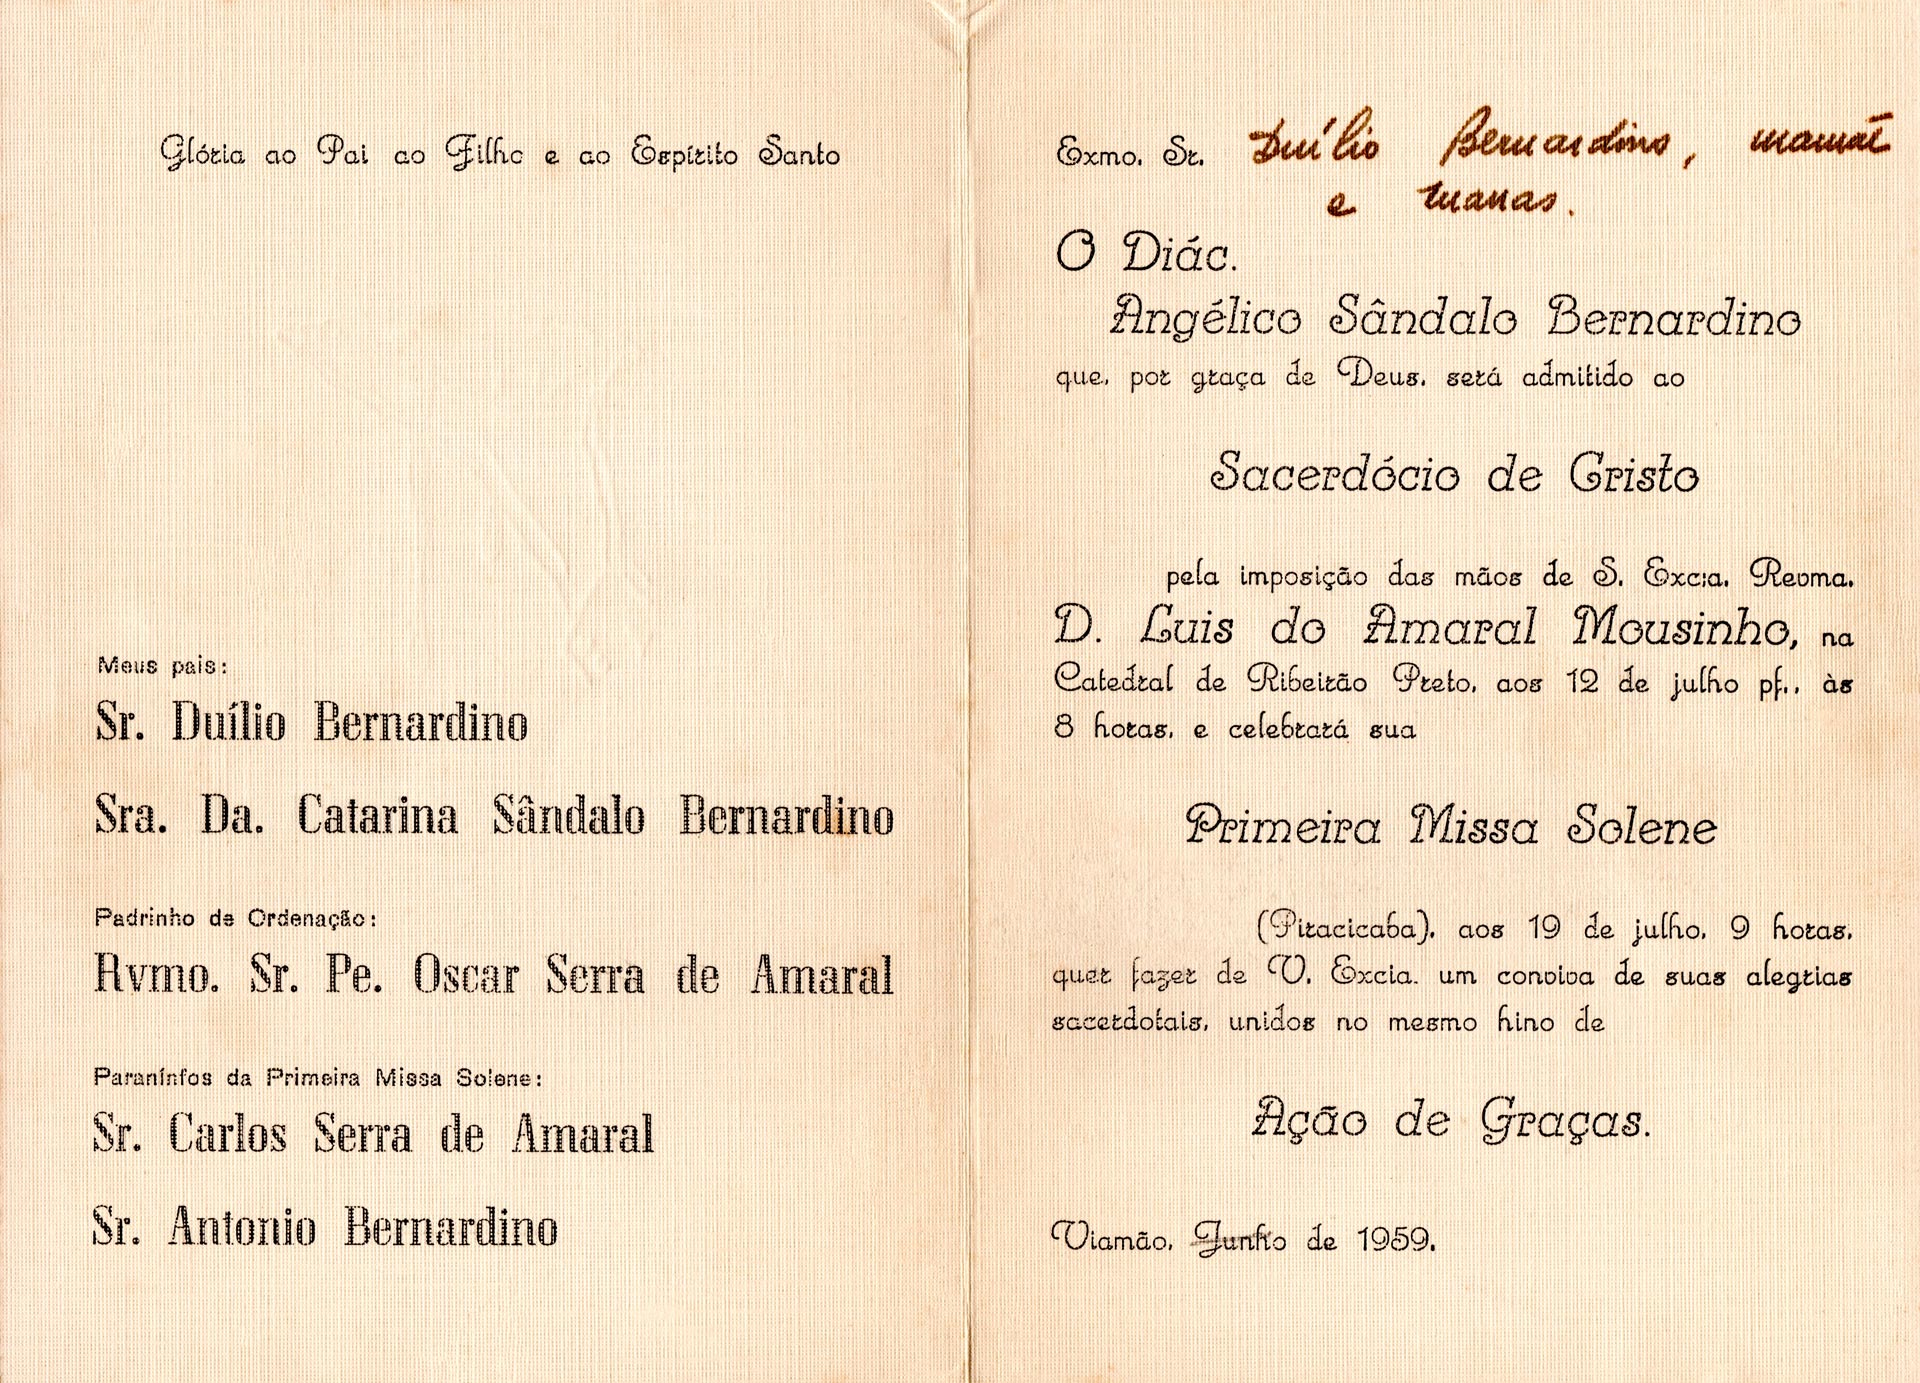 Convite para cerimônia de ordenação em 12 de julho de 1959